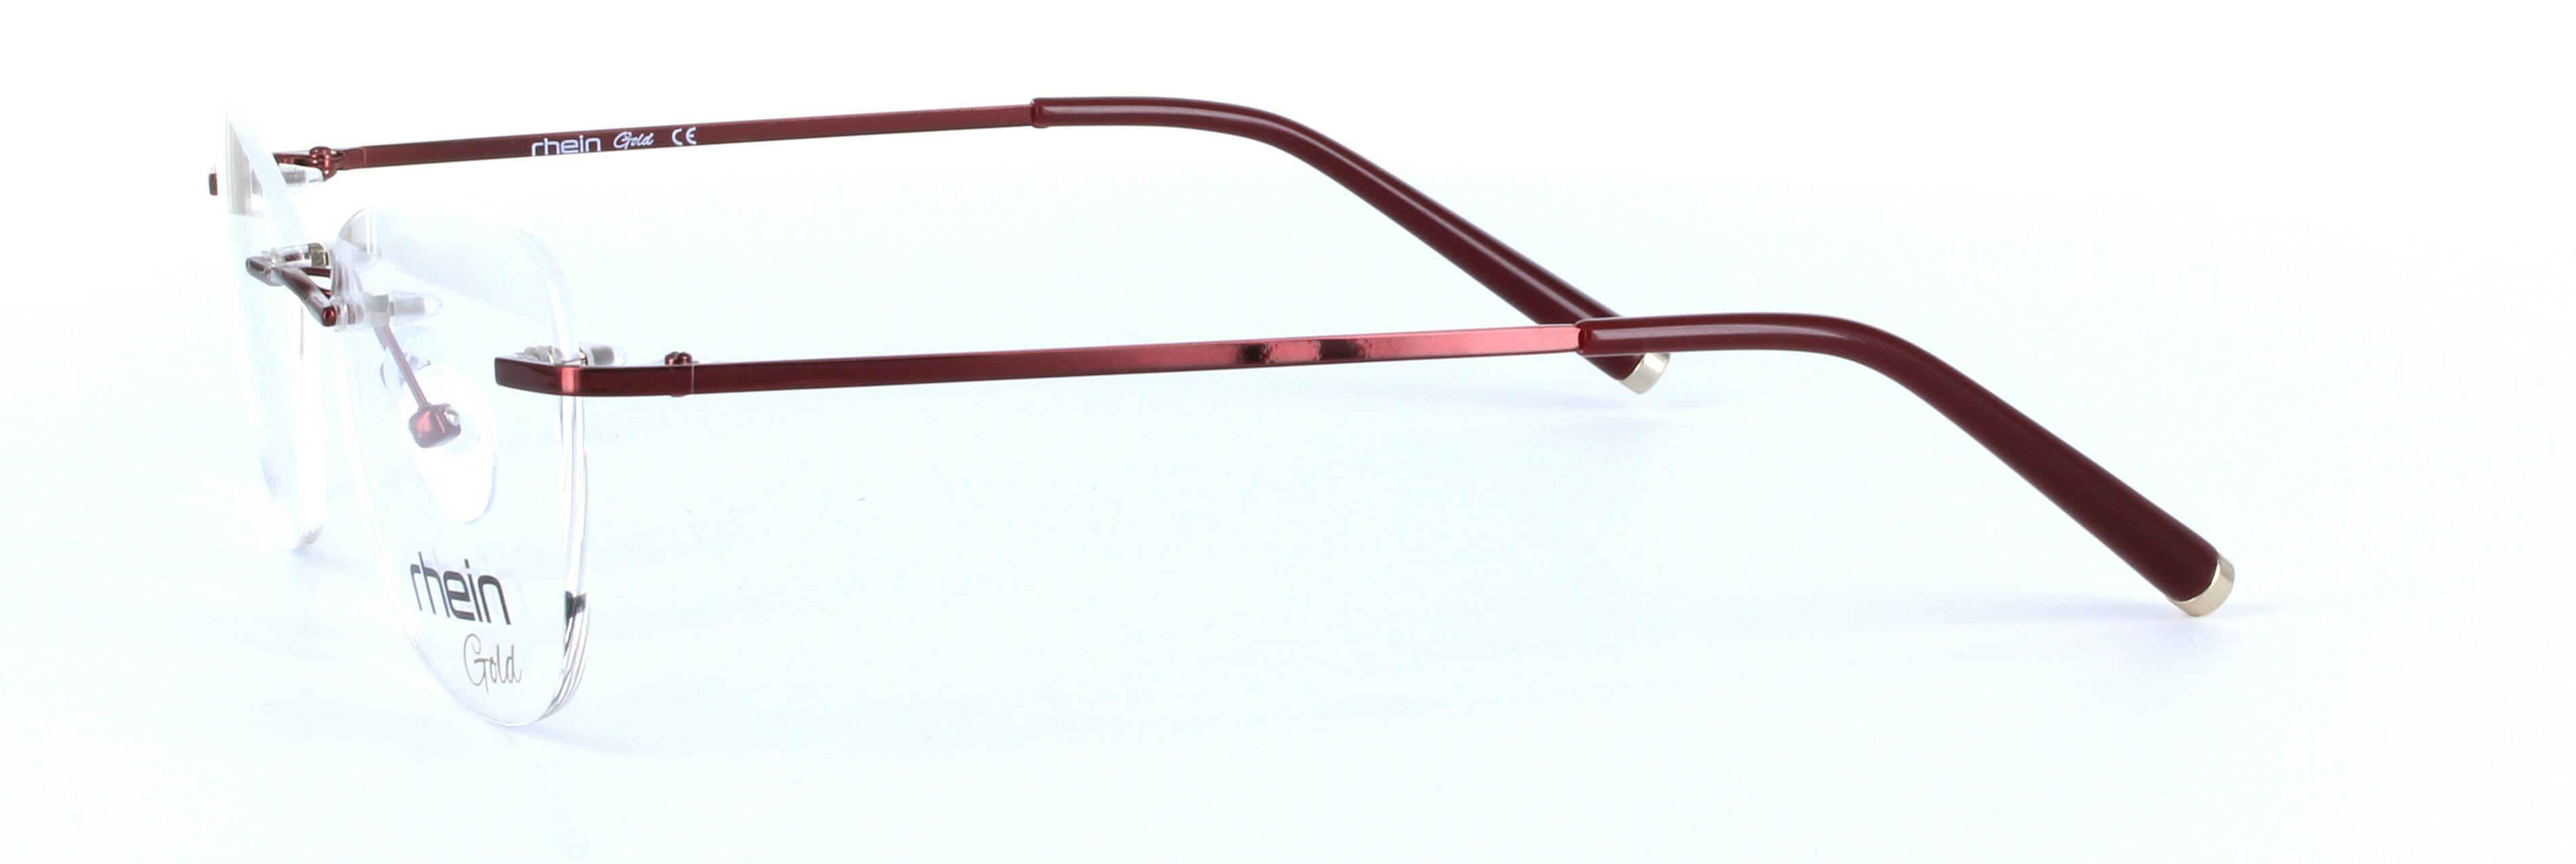 Hope Titanium Burgundy Rimless Rectangular Titanium Glasses - Image View 2